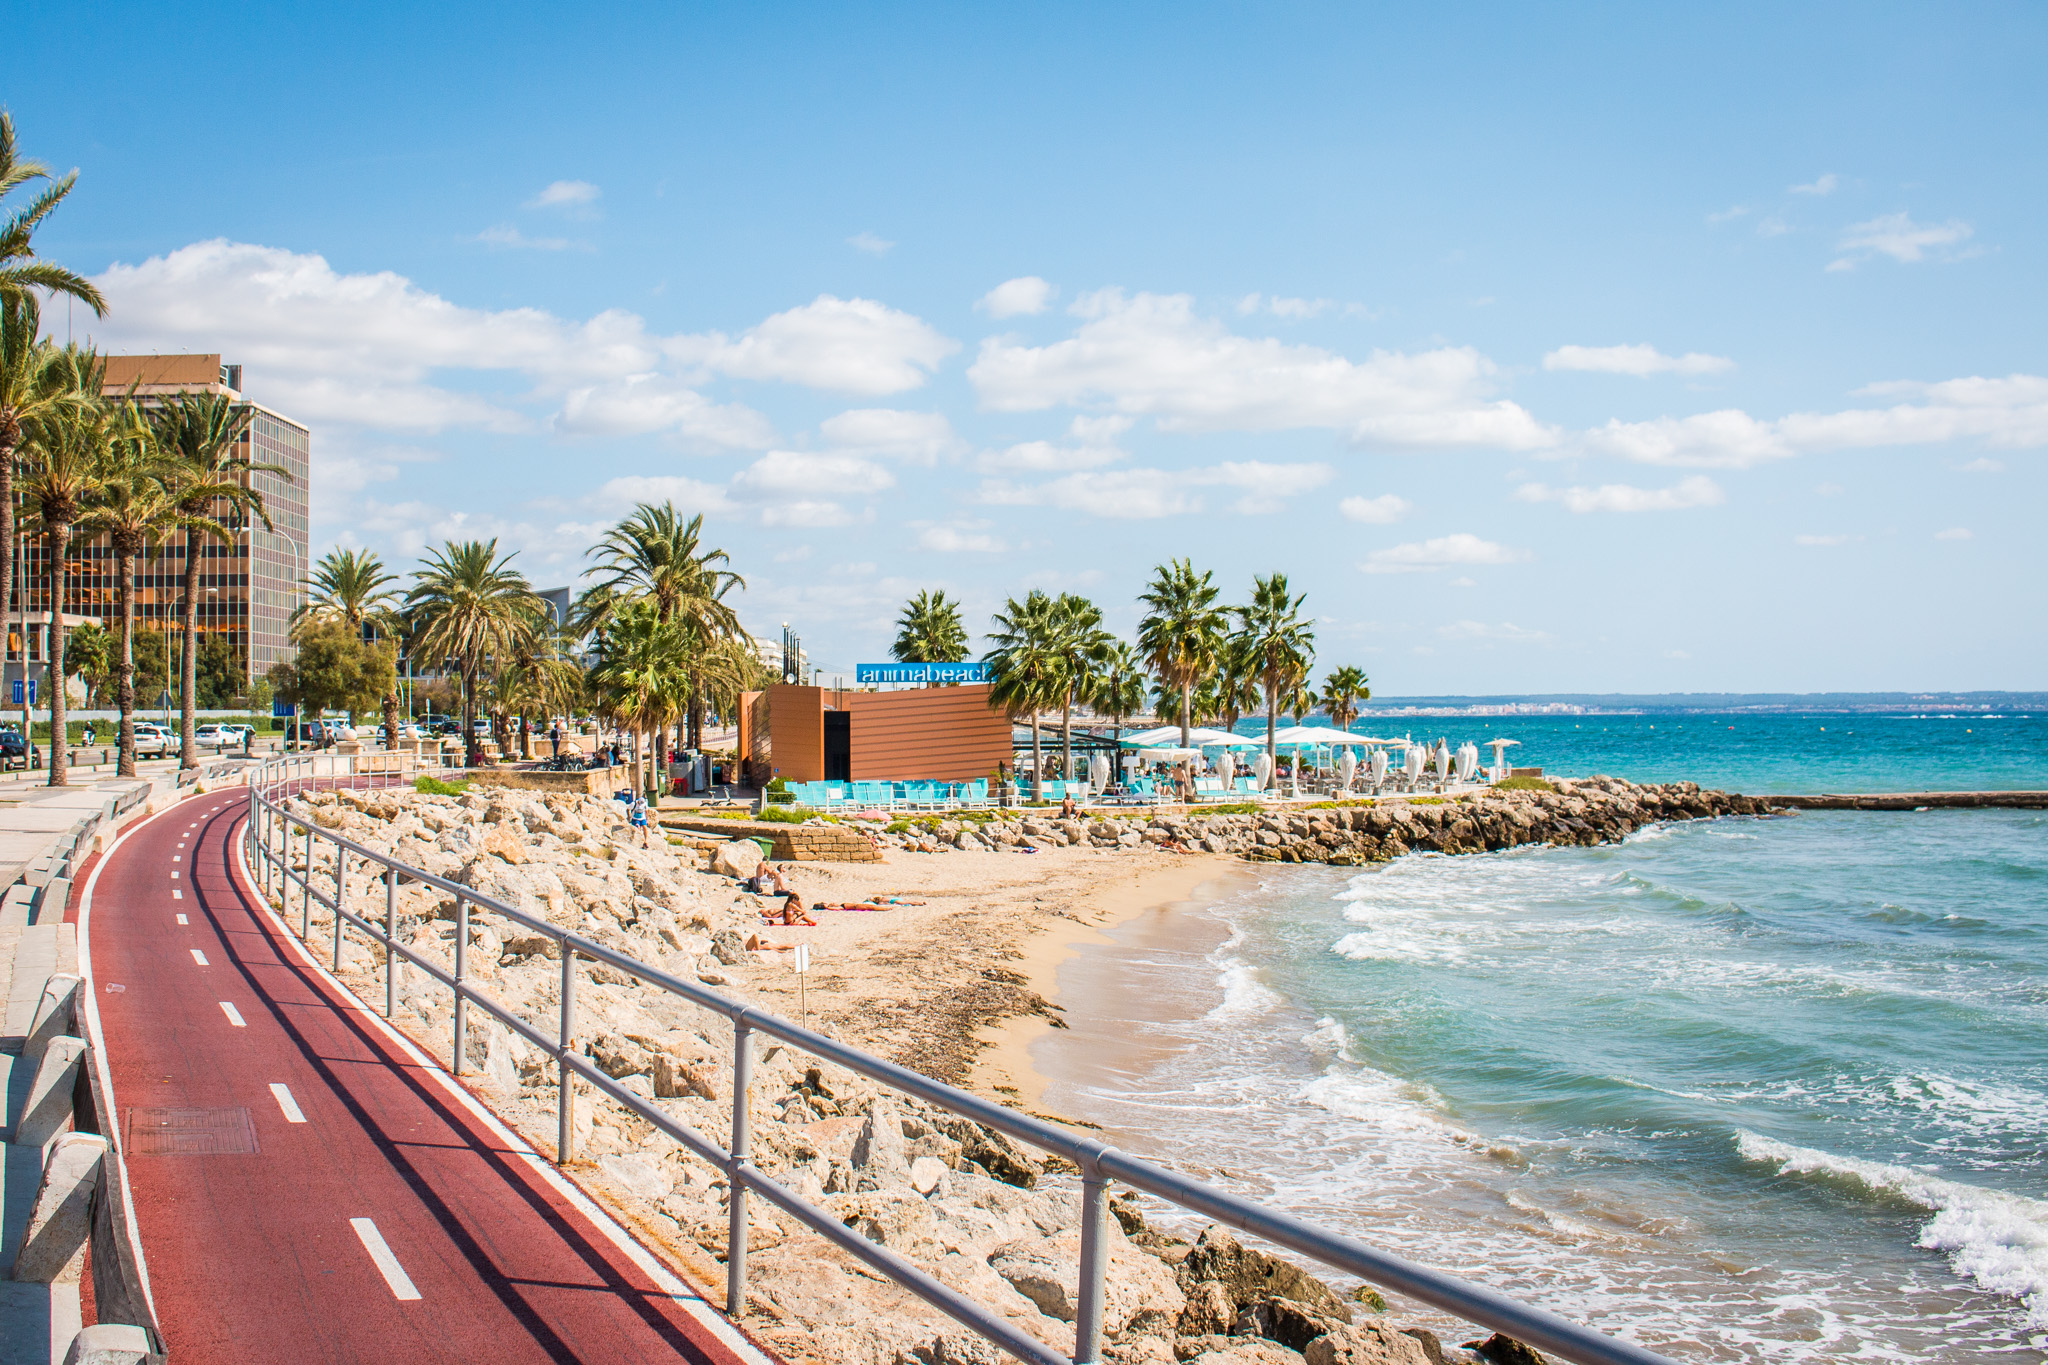 Närheten till havet, stranden och beach clubs är några fördelar med att bo i Palma City Beach. 